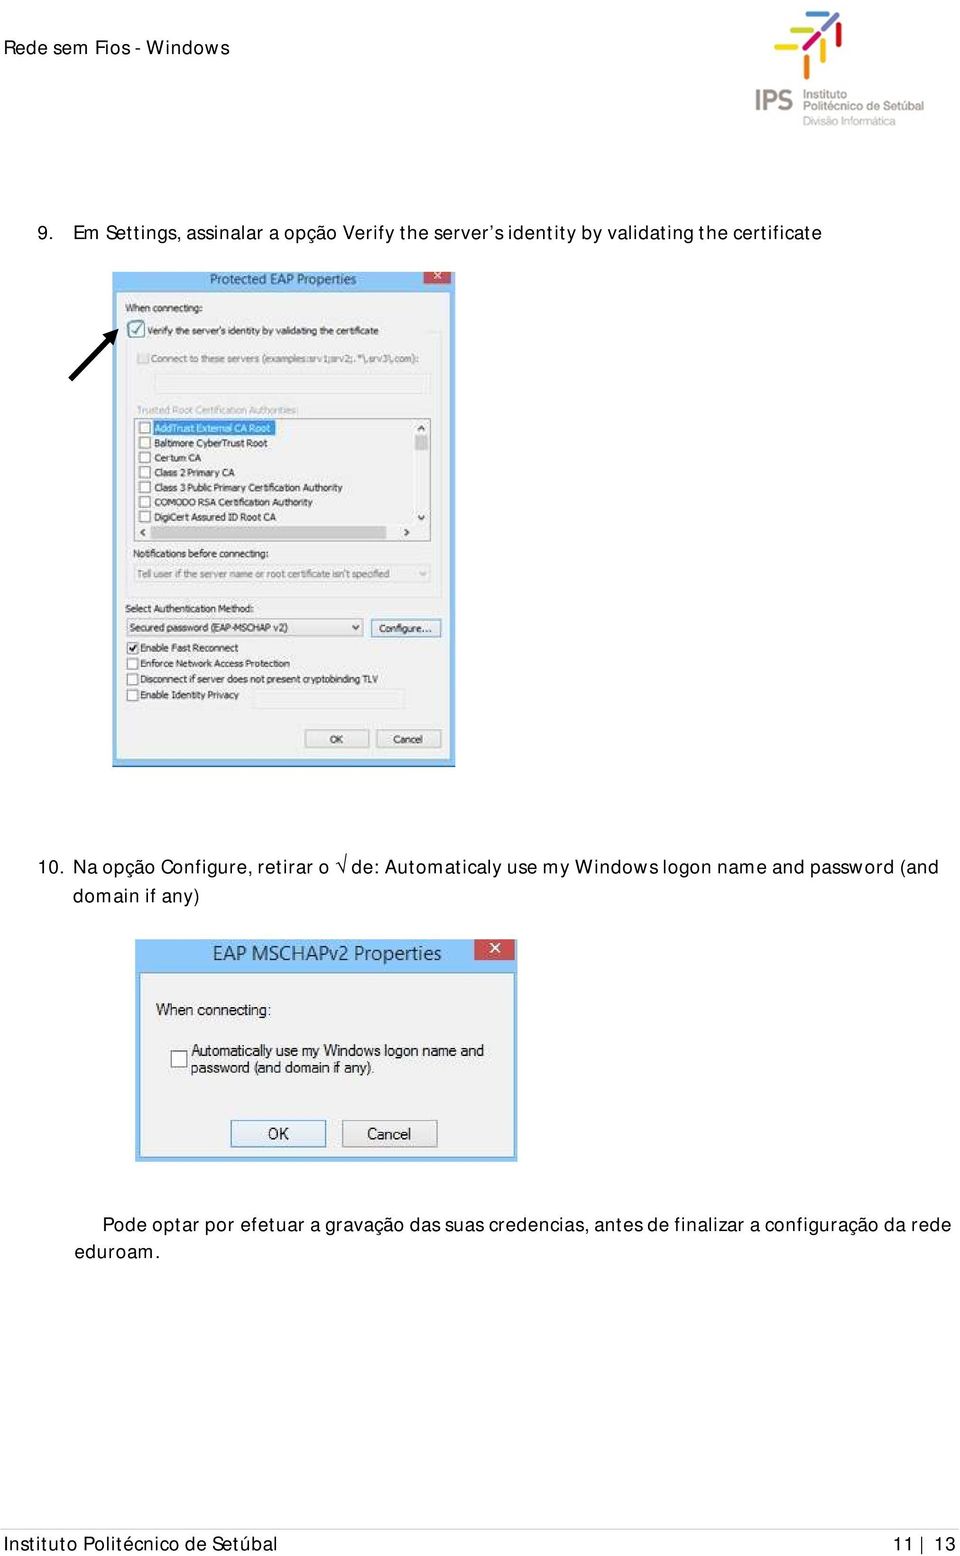 Na opção Configure, retirar o de: Automaticaly use my Windows logon name and password